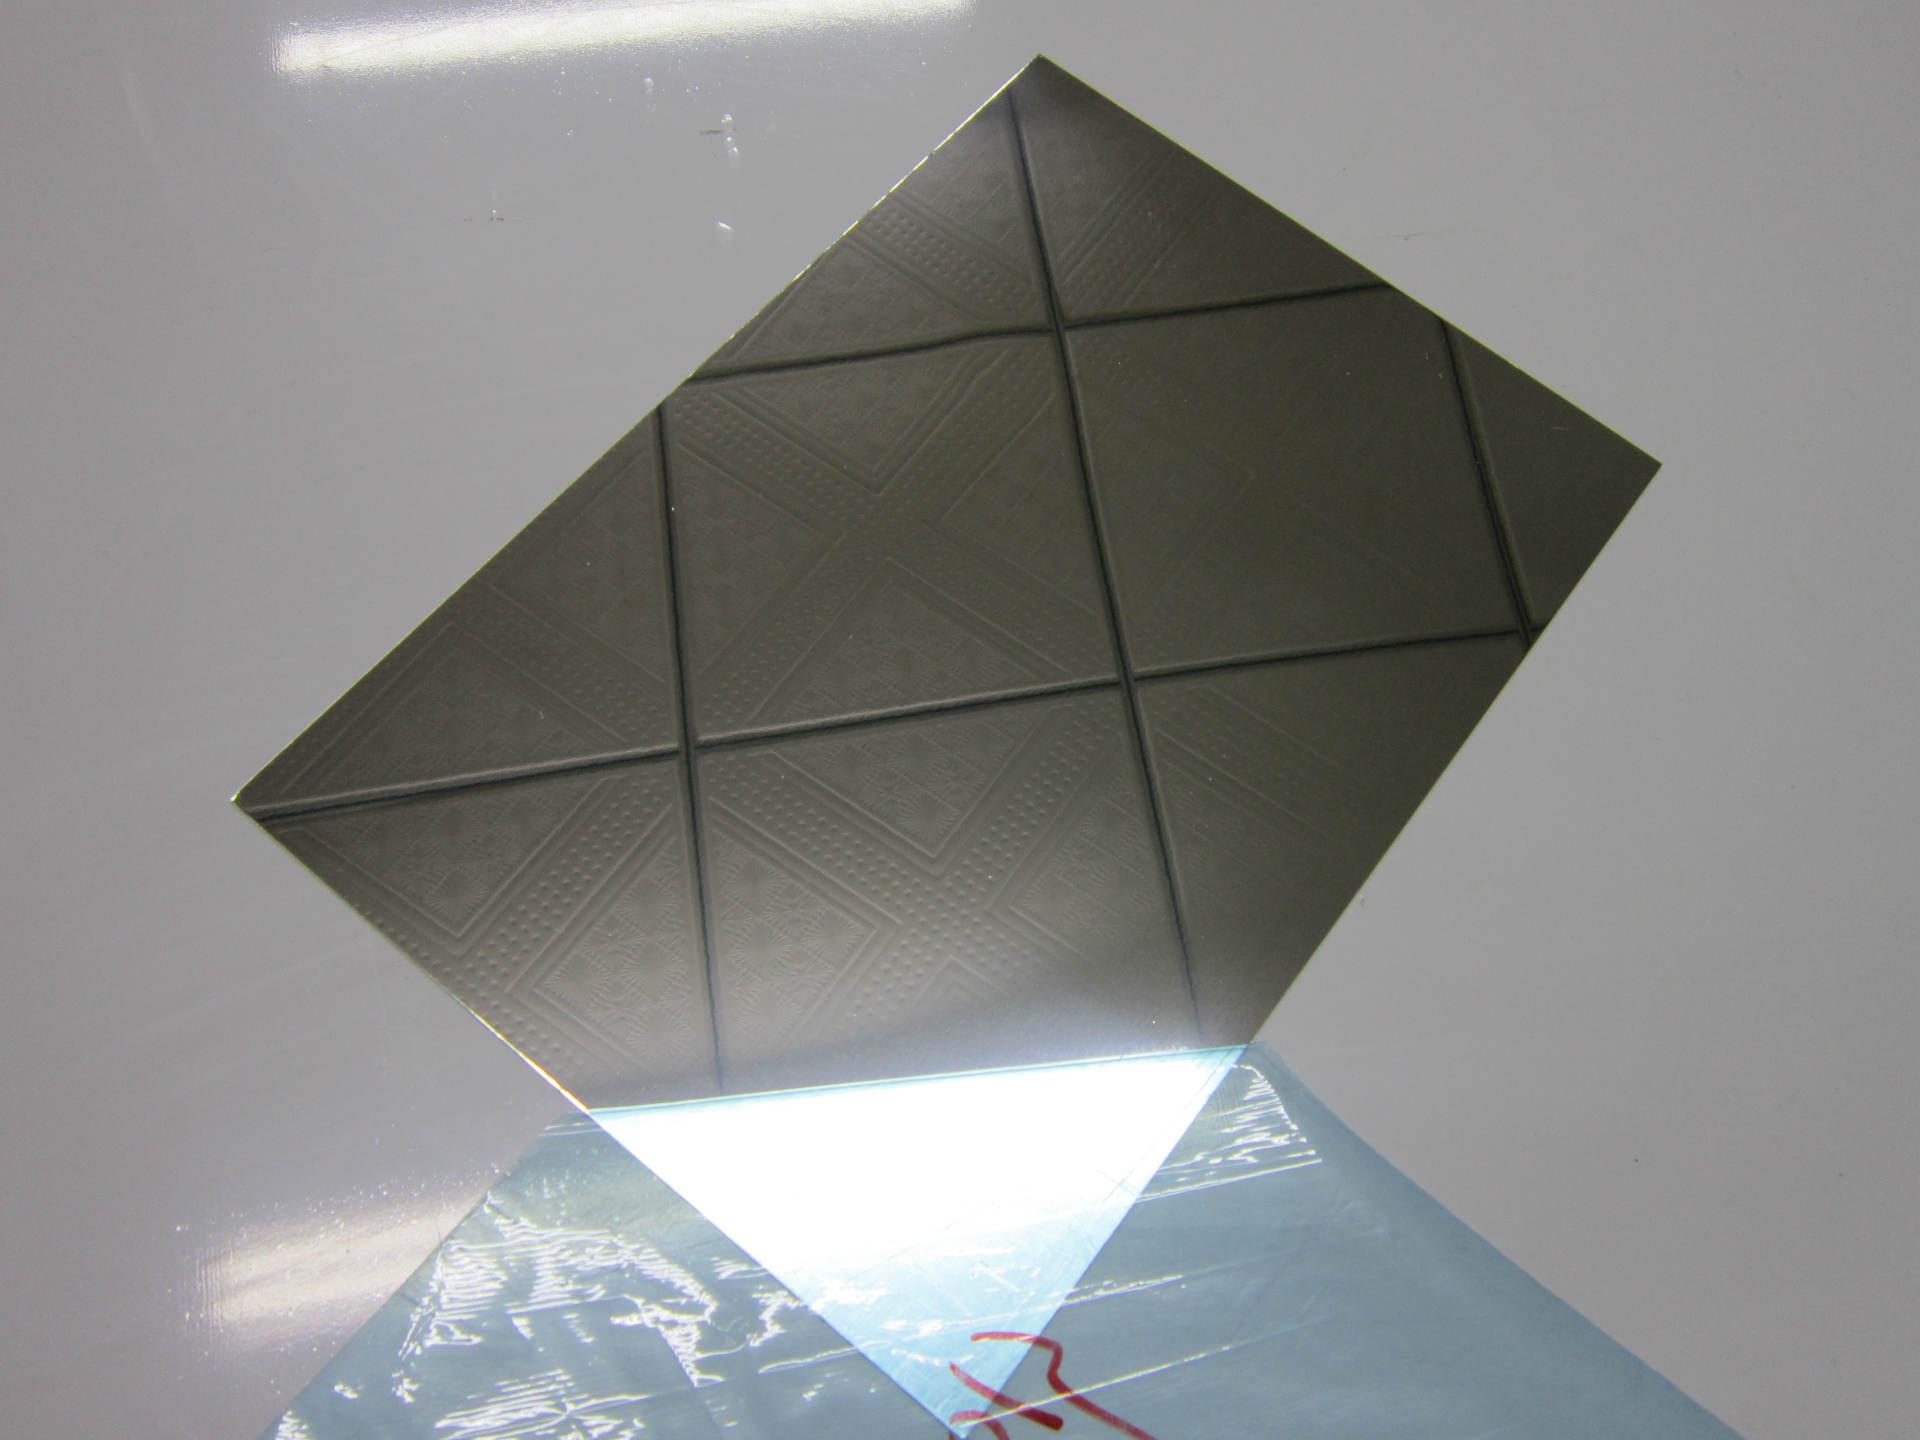 四川鋁單板廠家告訴你鏡面鋁單板要如何進行清洗